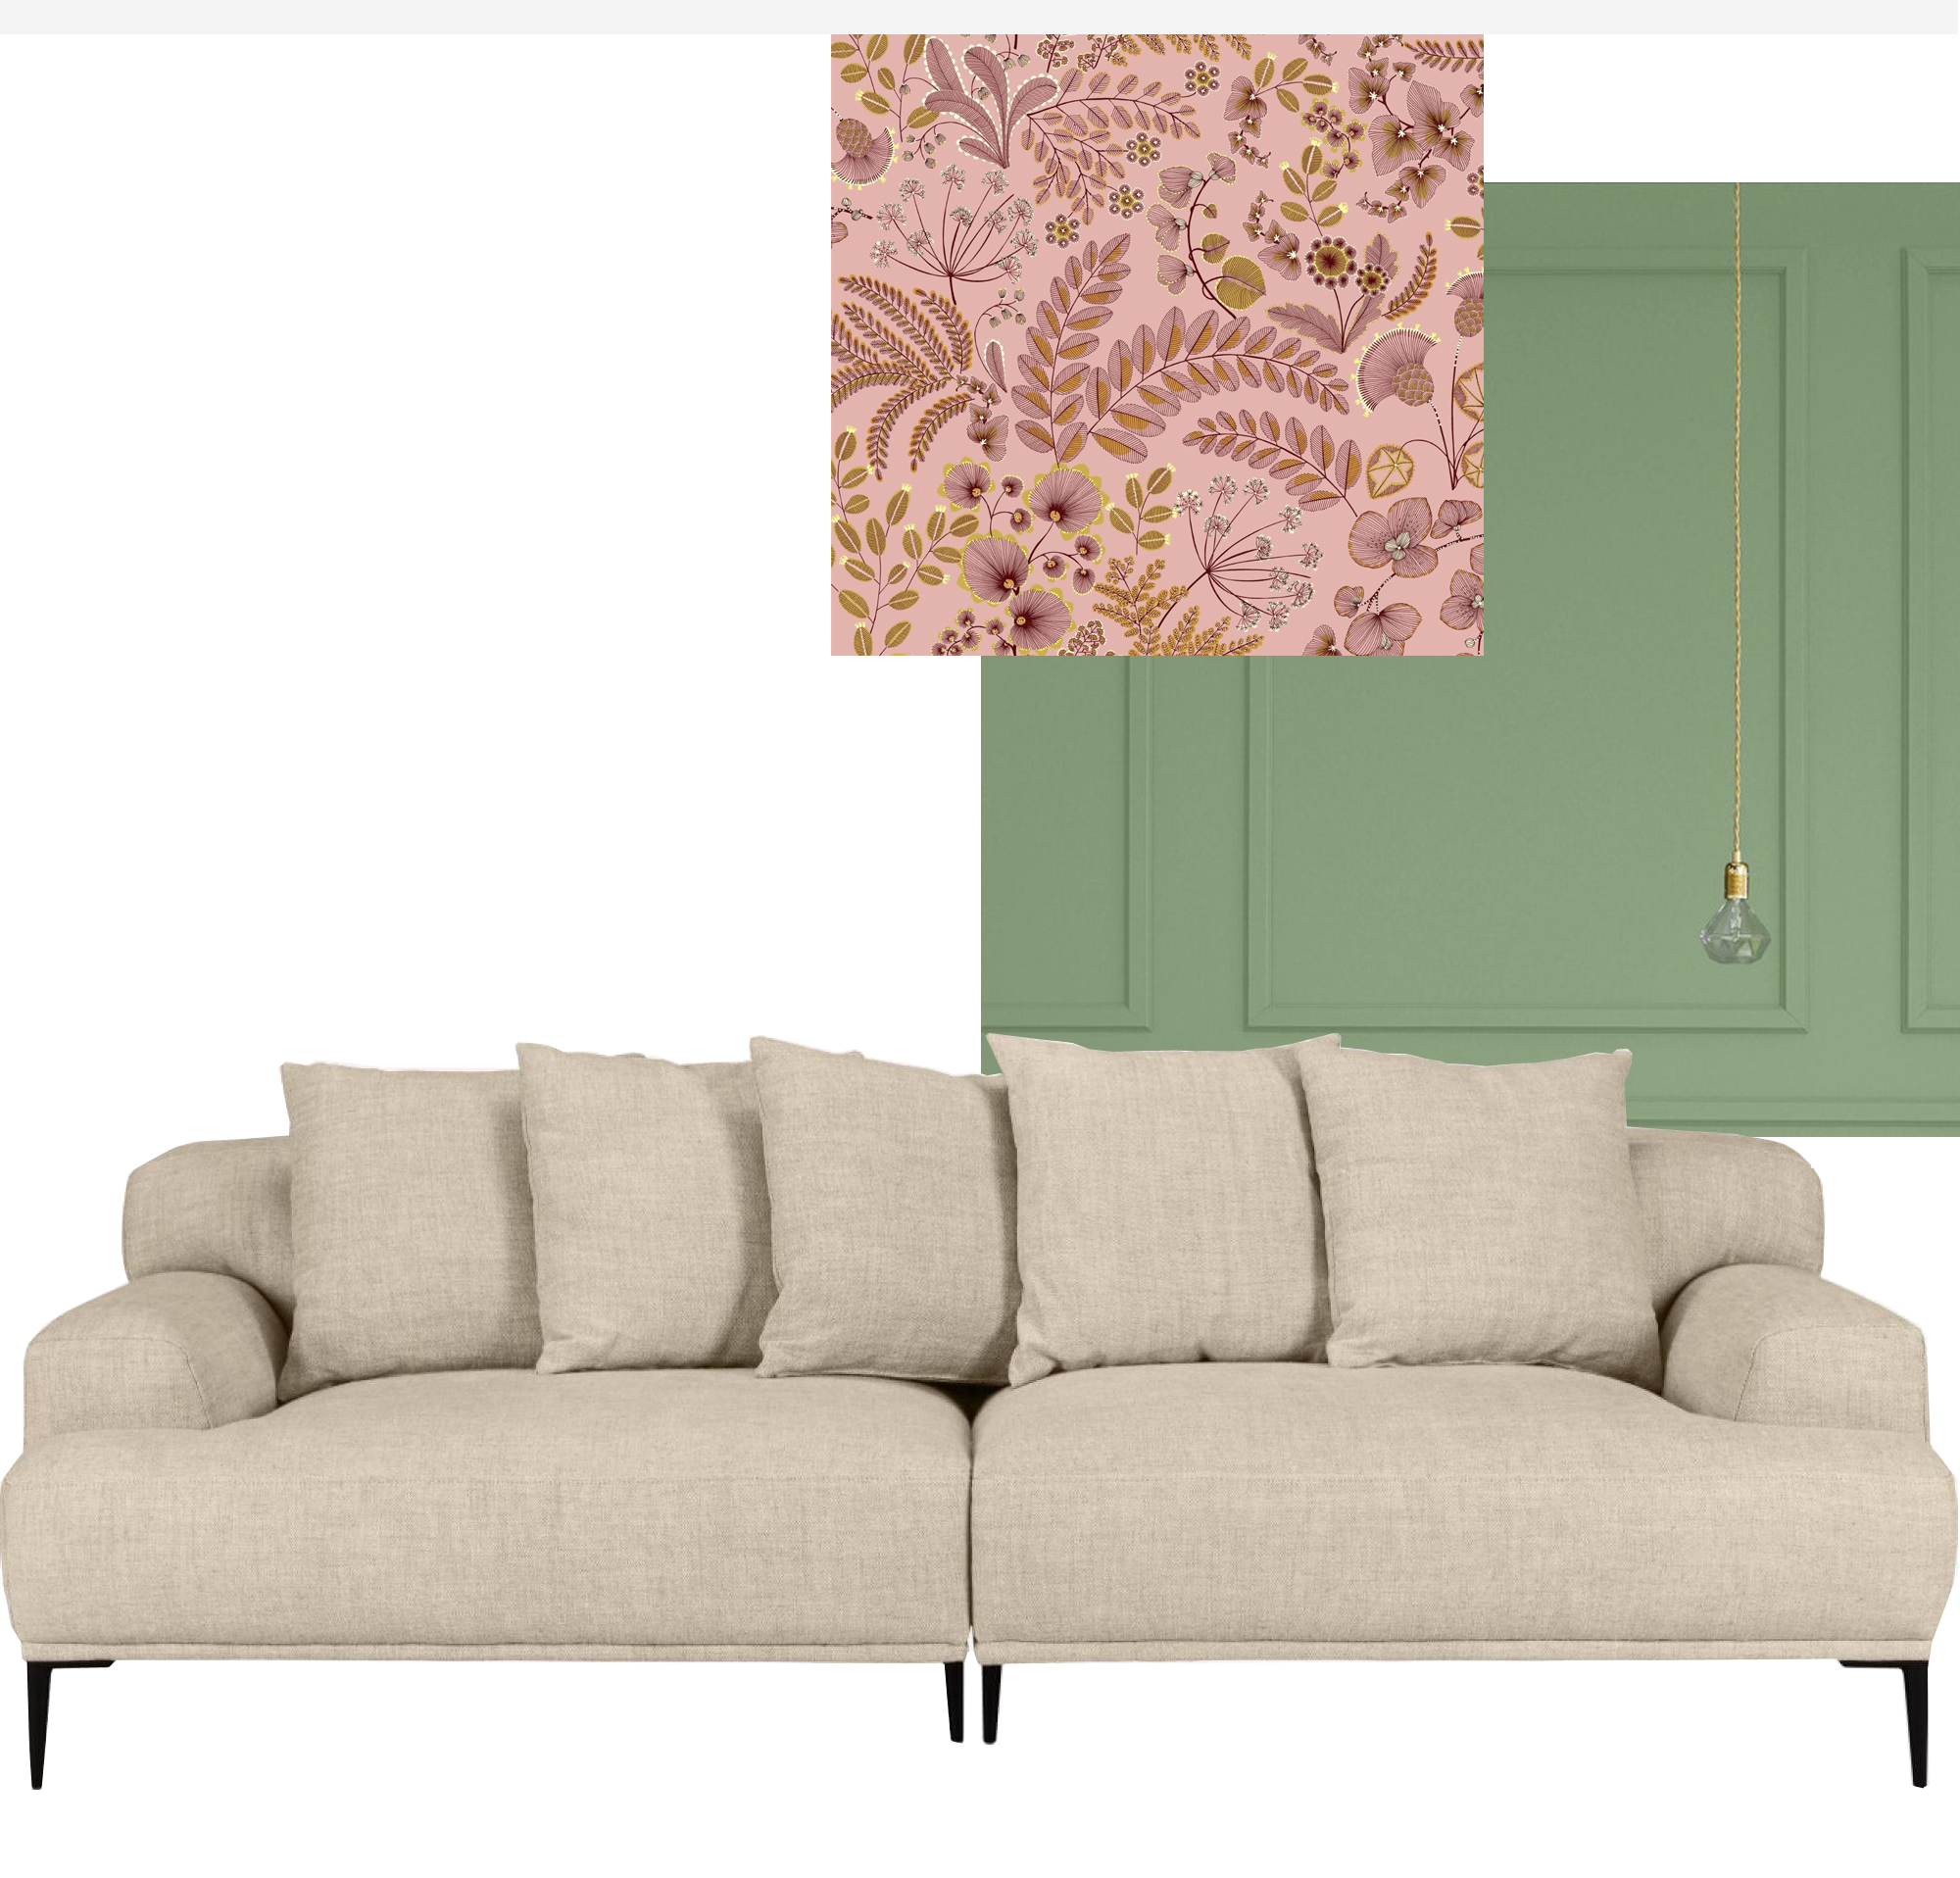 Déco canapé beige : quels meubles choisir ?